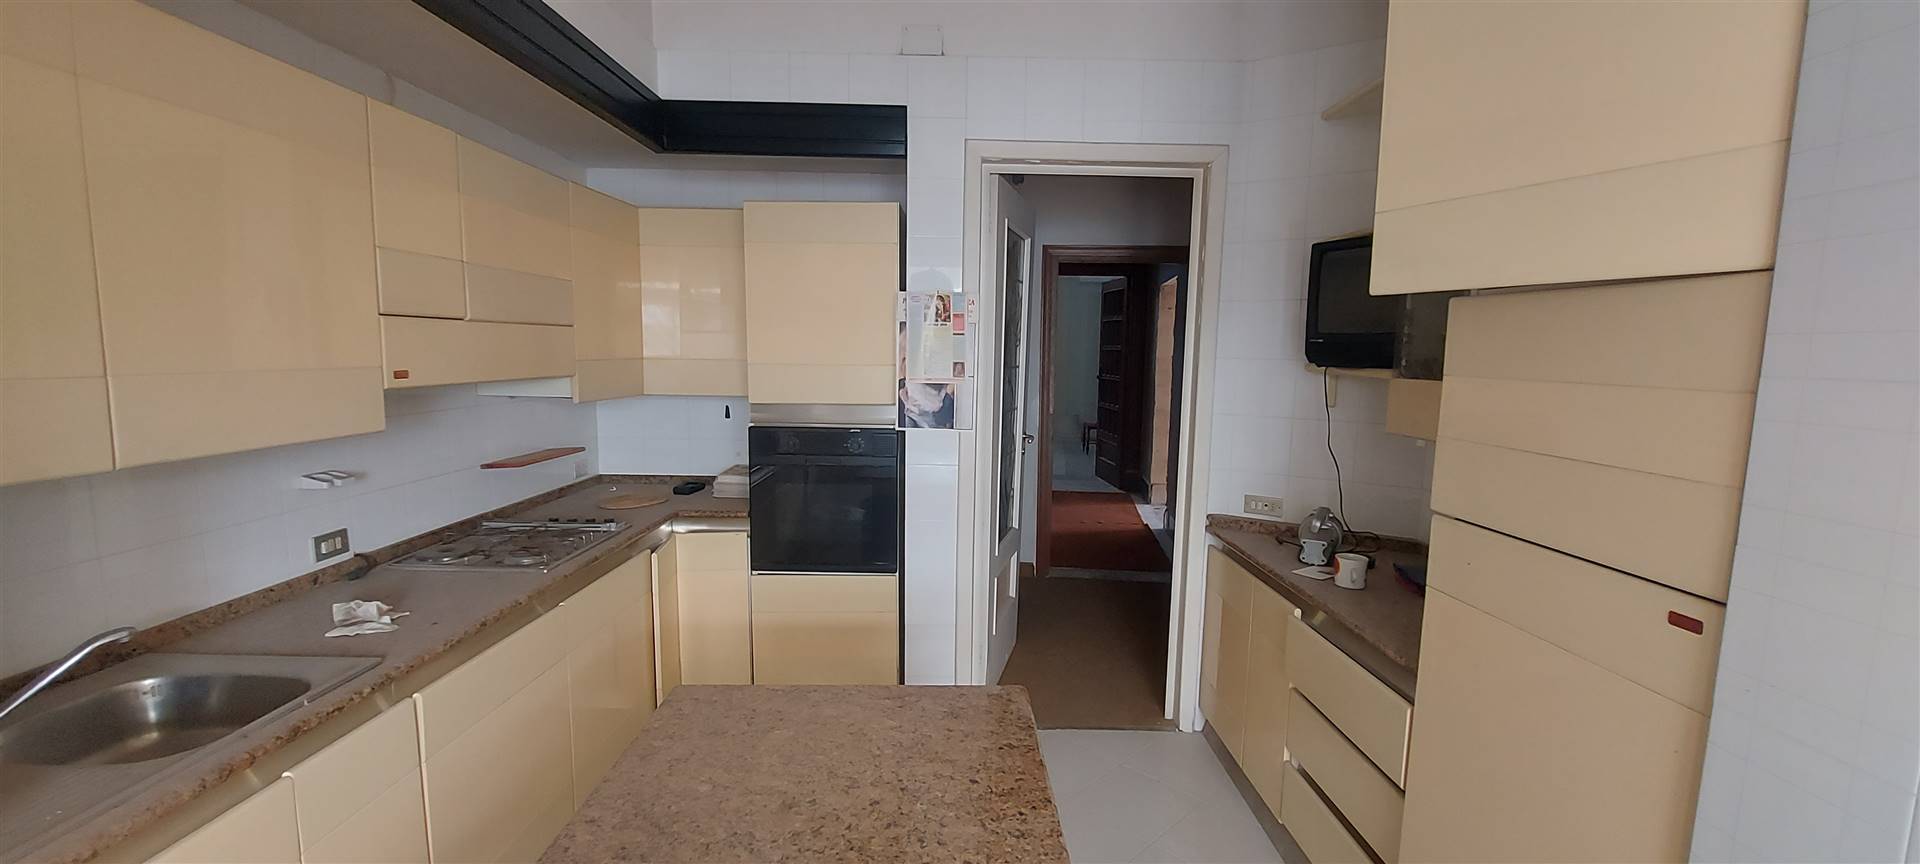 Appartamento in vendita a Mesagne, 4 locali, zona Località: PORTA PICCOLA, prezzo € 85.000 | PortaleAgenzieImmobiliari.it